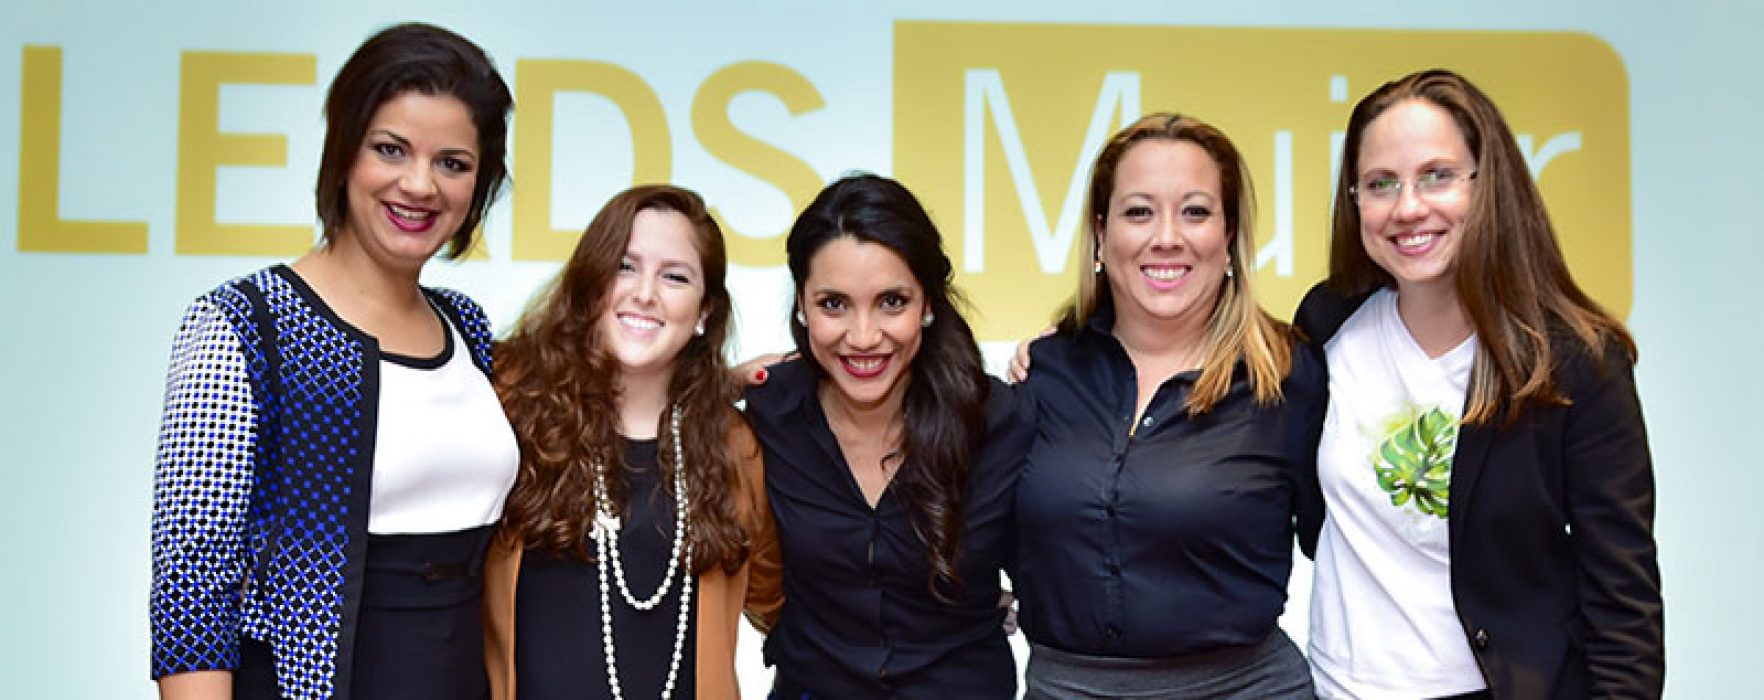 Finalistas del Programa Leads Mujer. / Fotografía: Periódico Digital Centroamericano y del Caribe